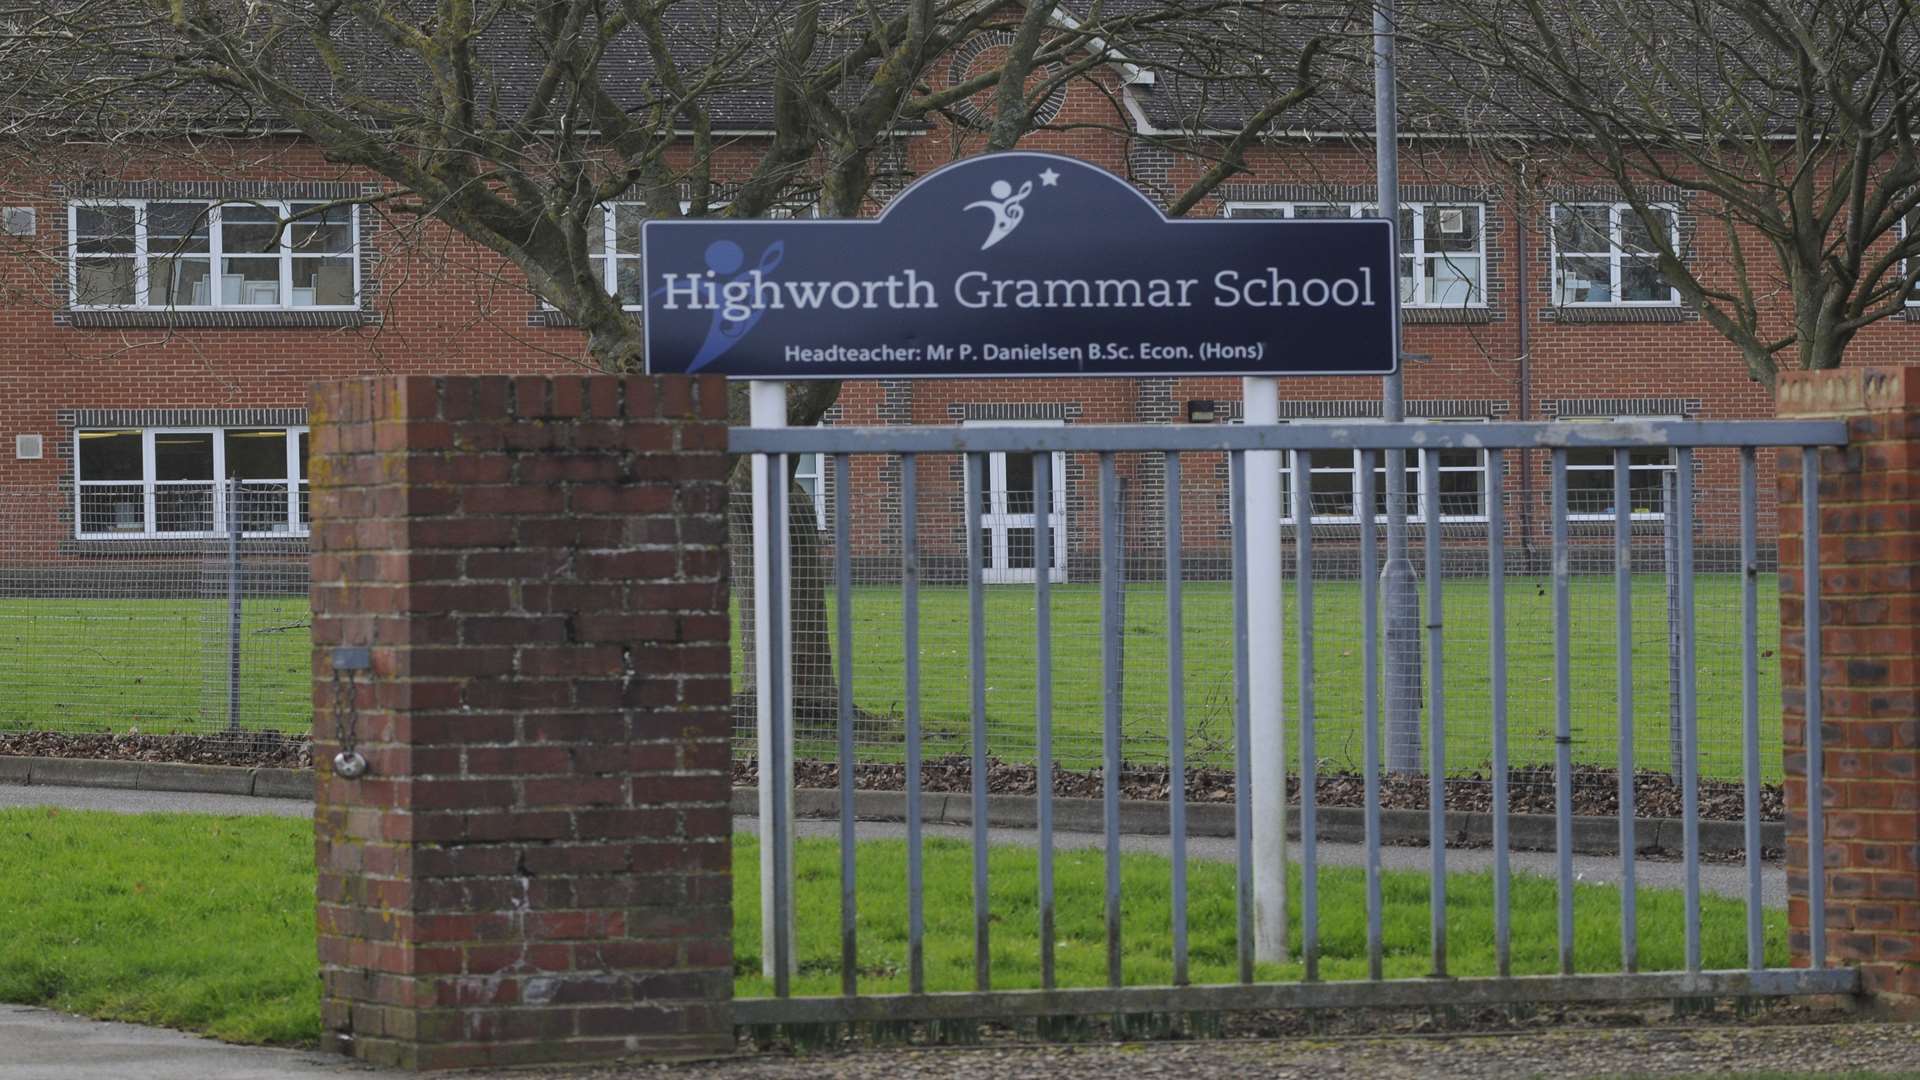 Luke was a student at Highworth Grammar School in Ashford